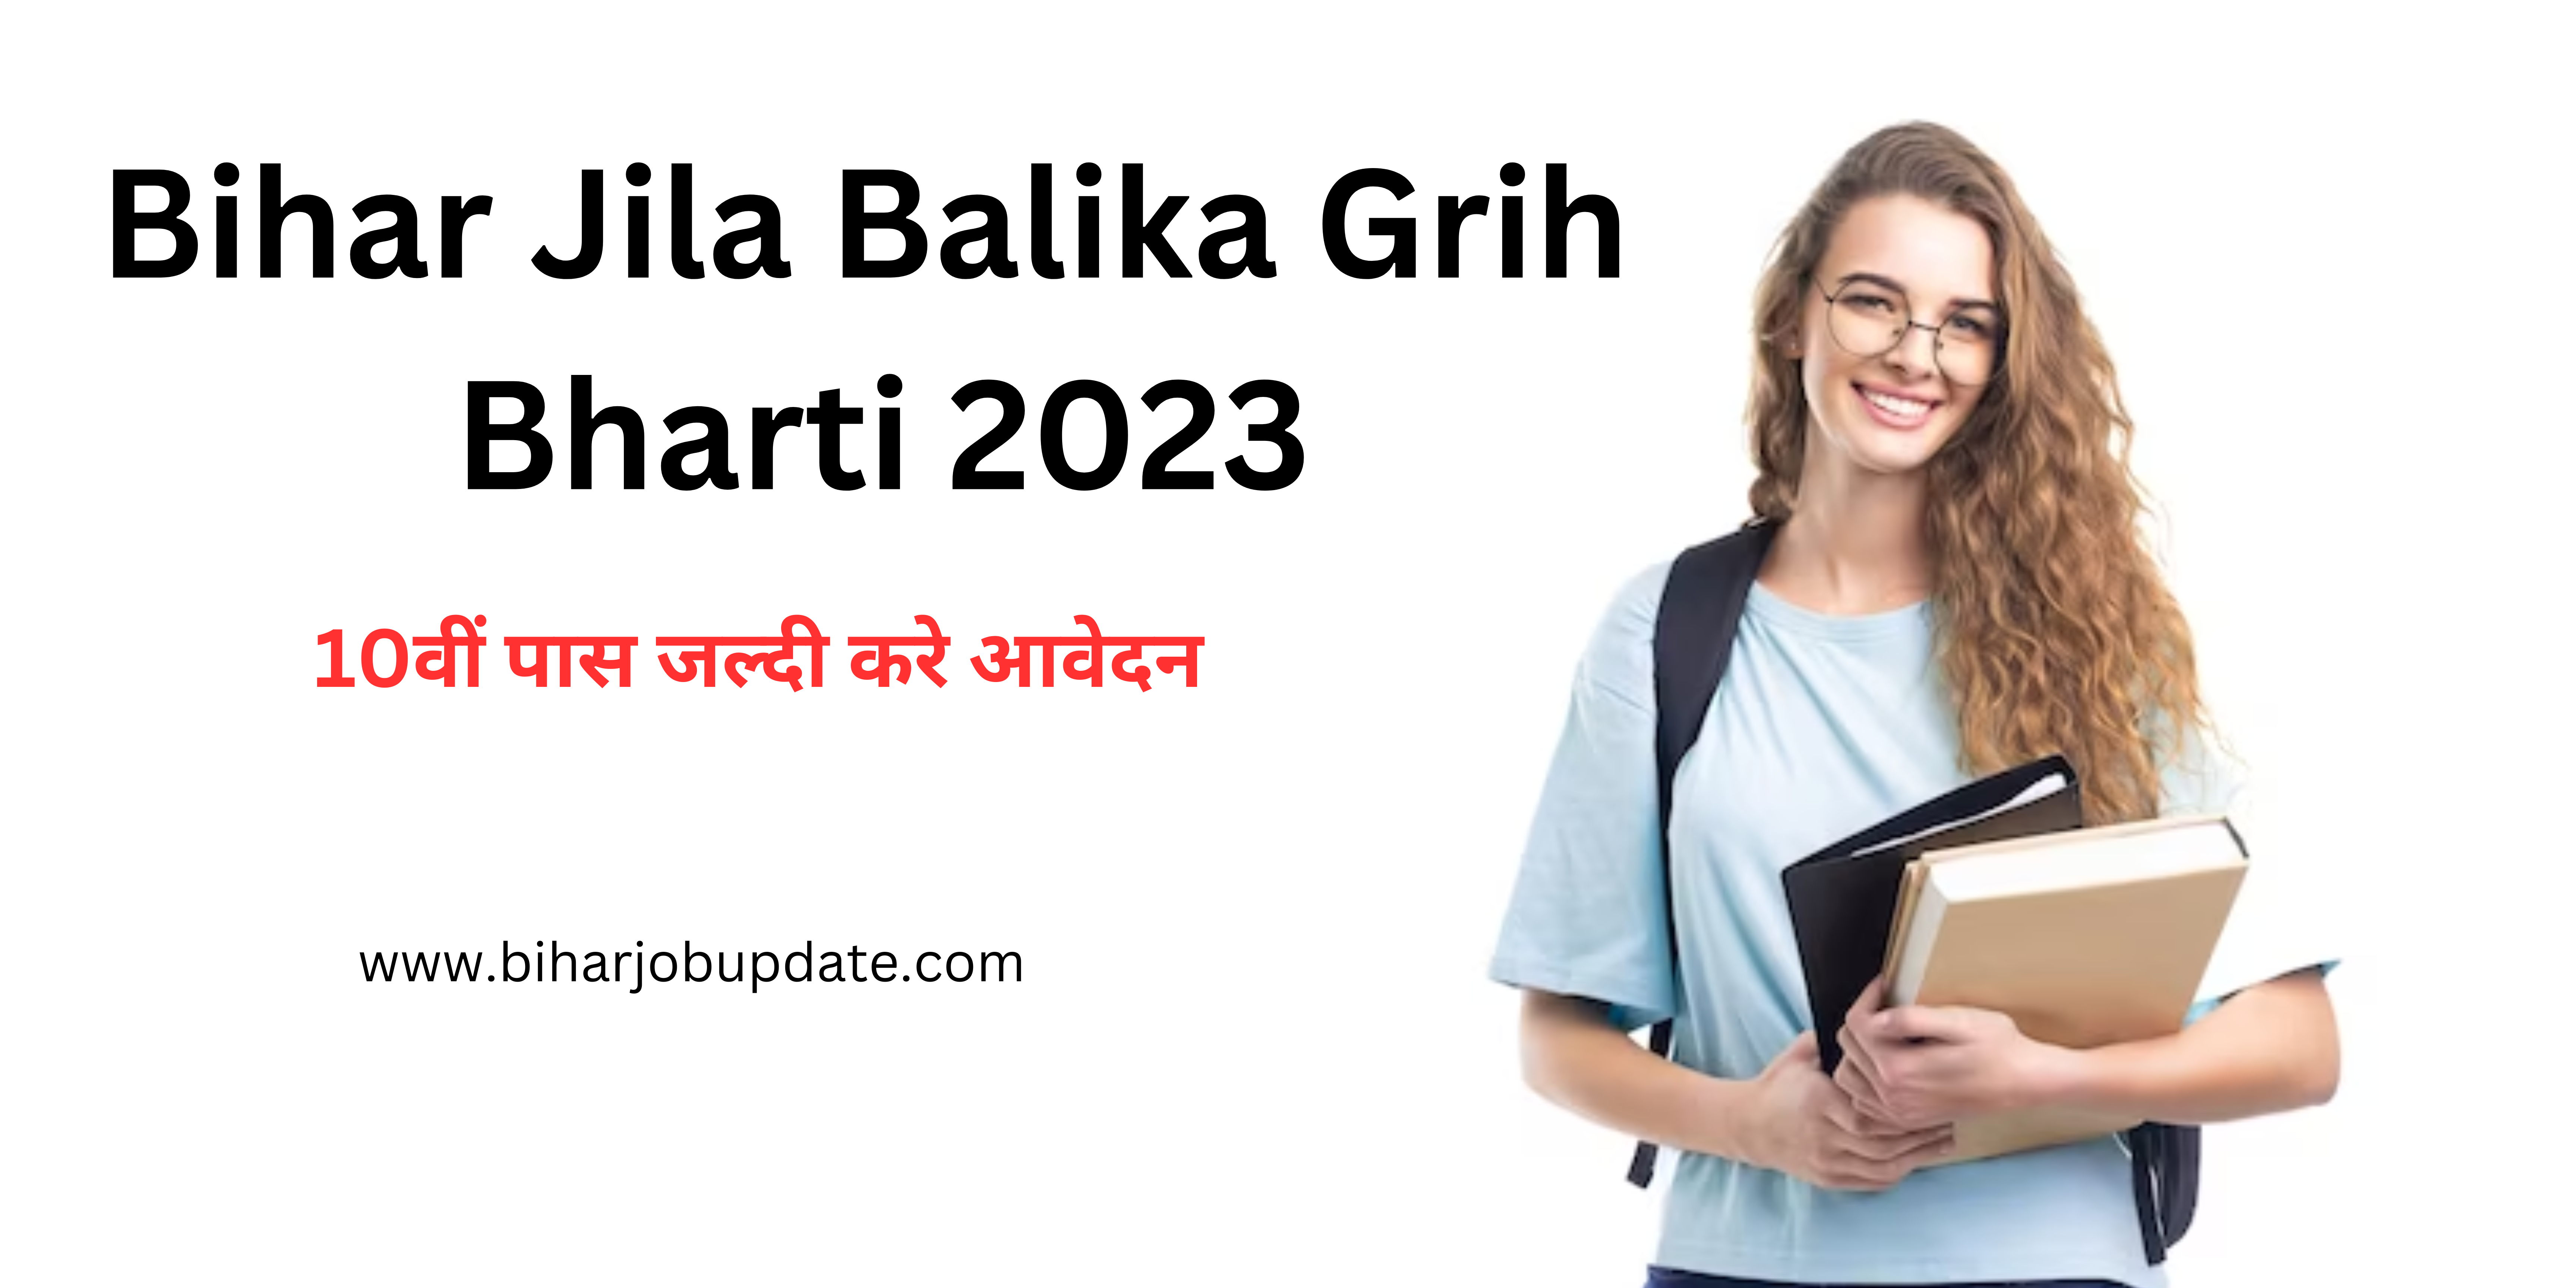 Bihar Jila Balika Grih Bharti 2023